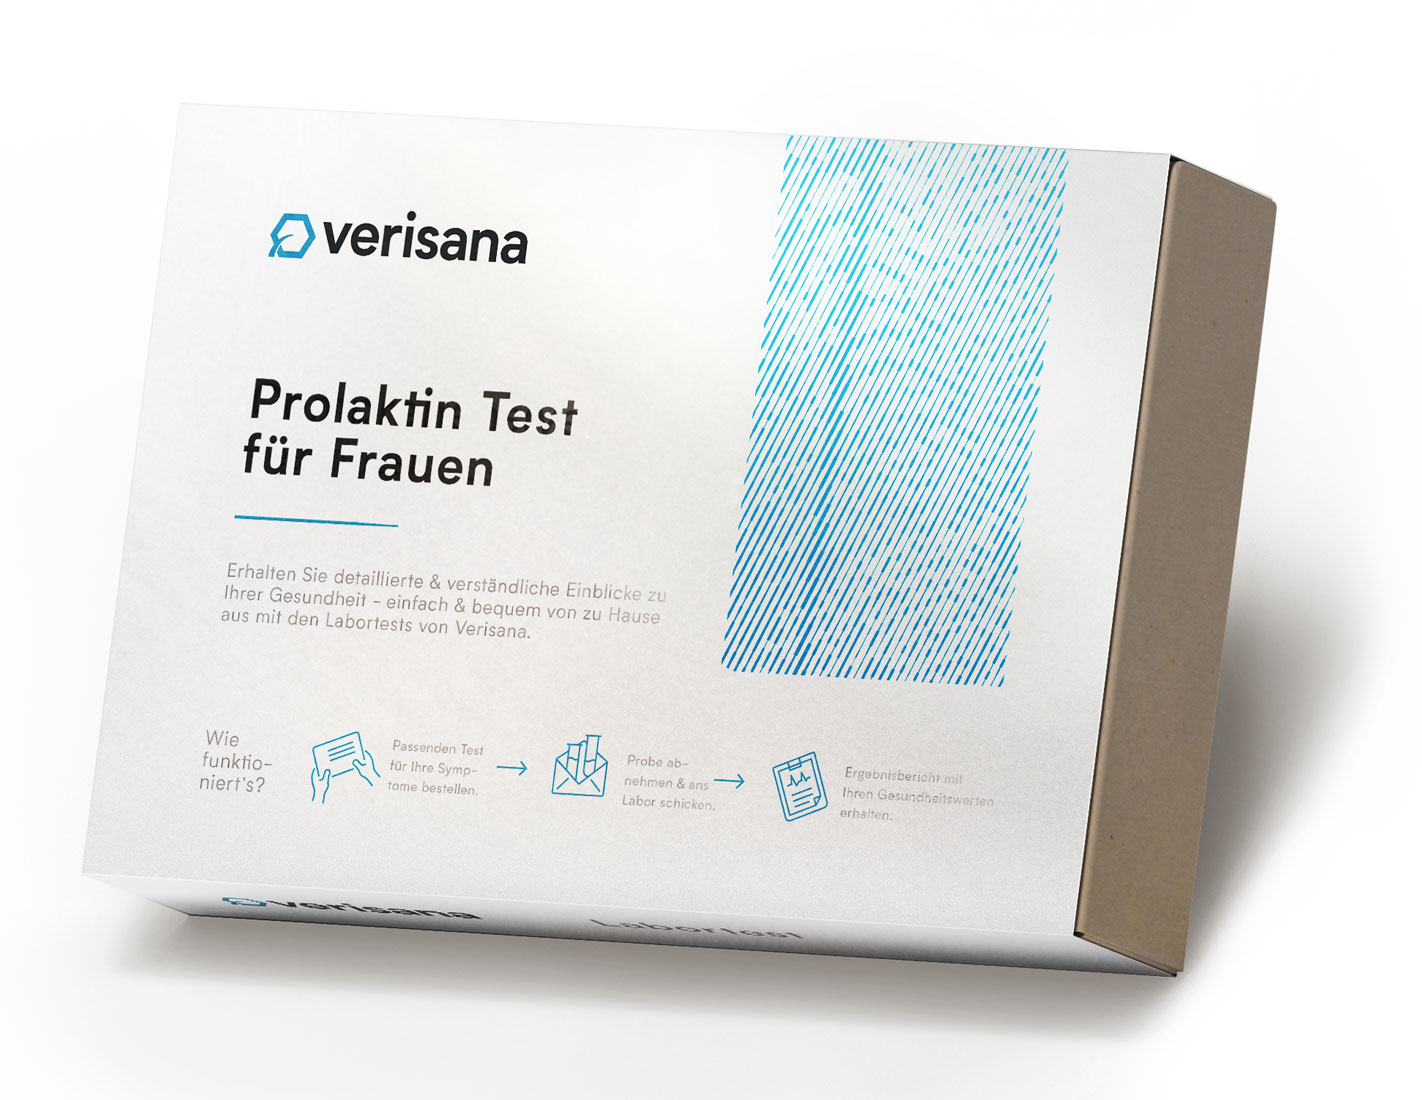 Prolaktin-Test